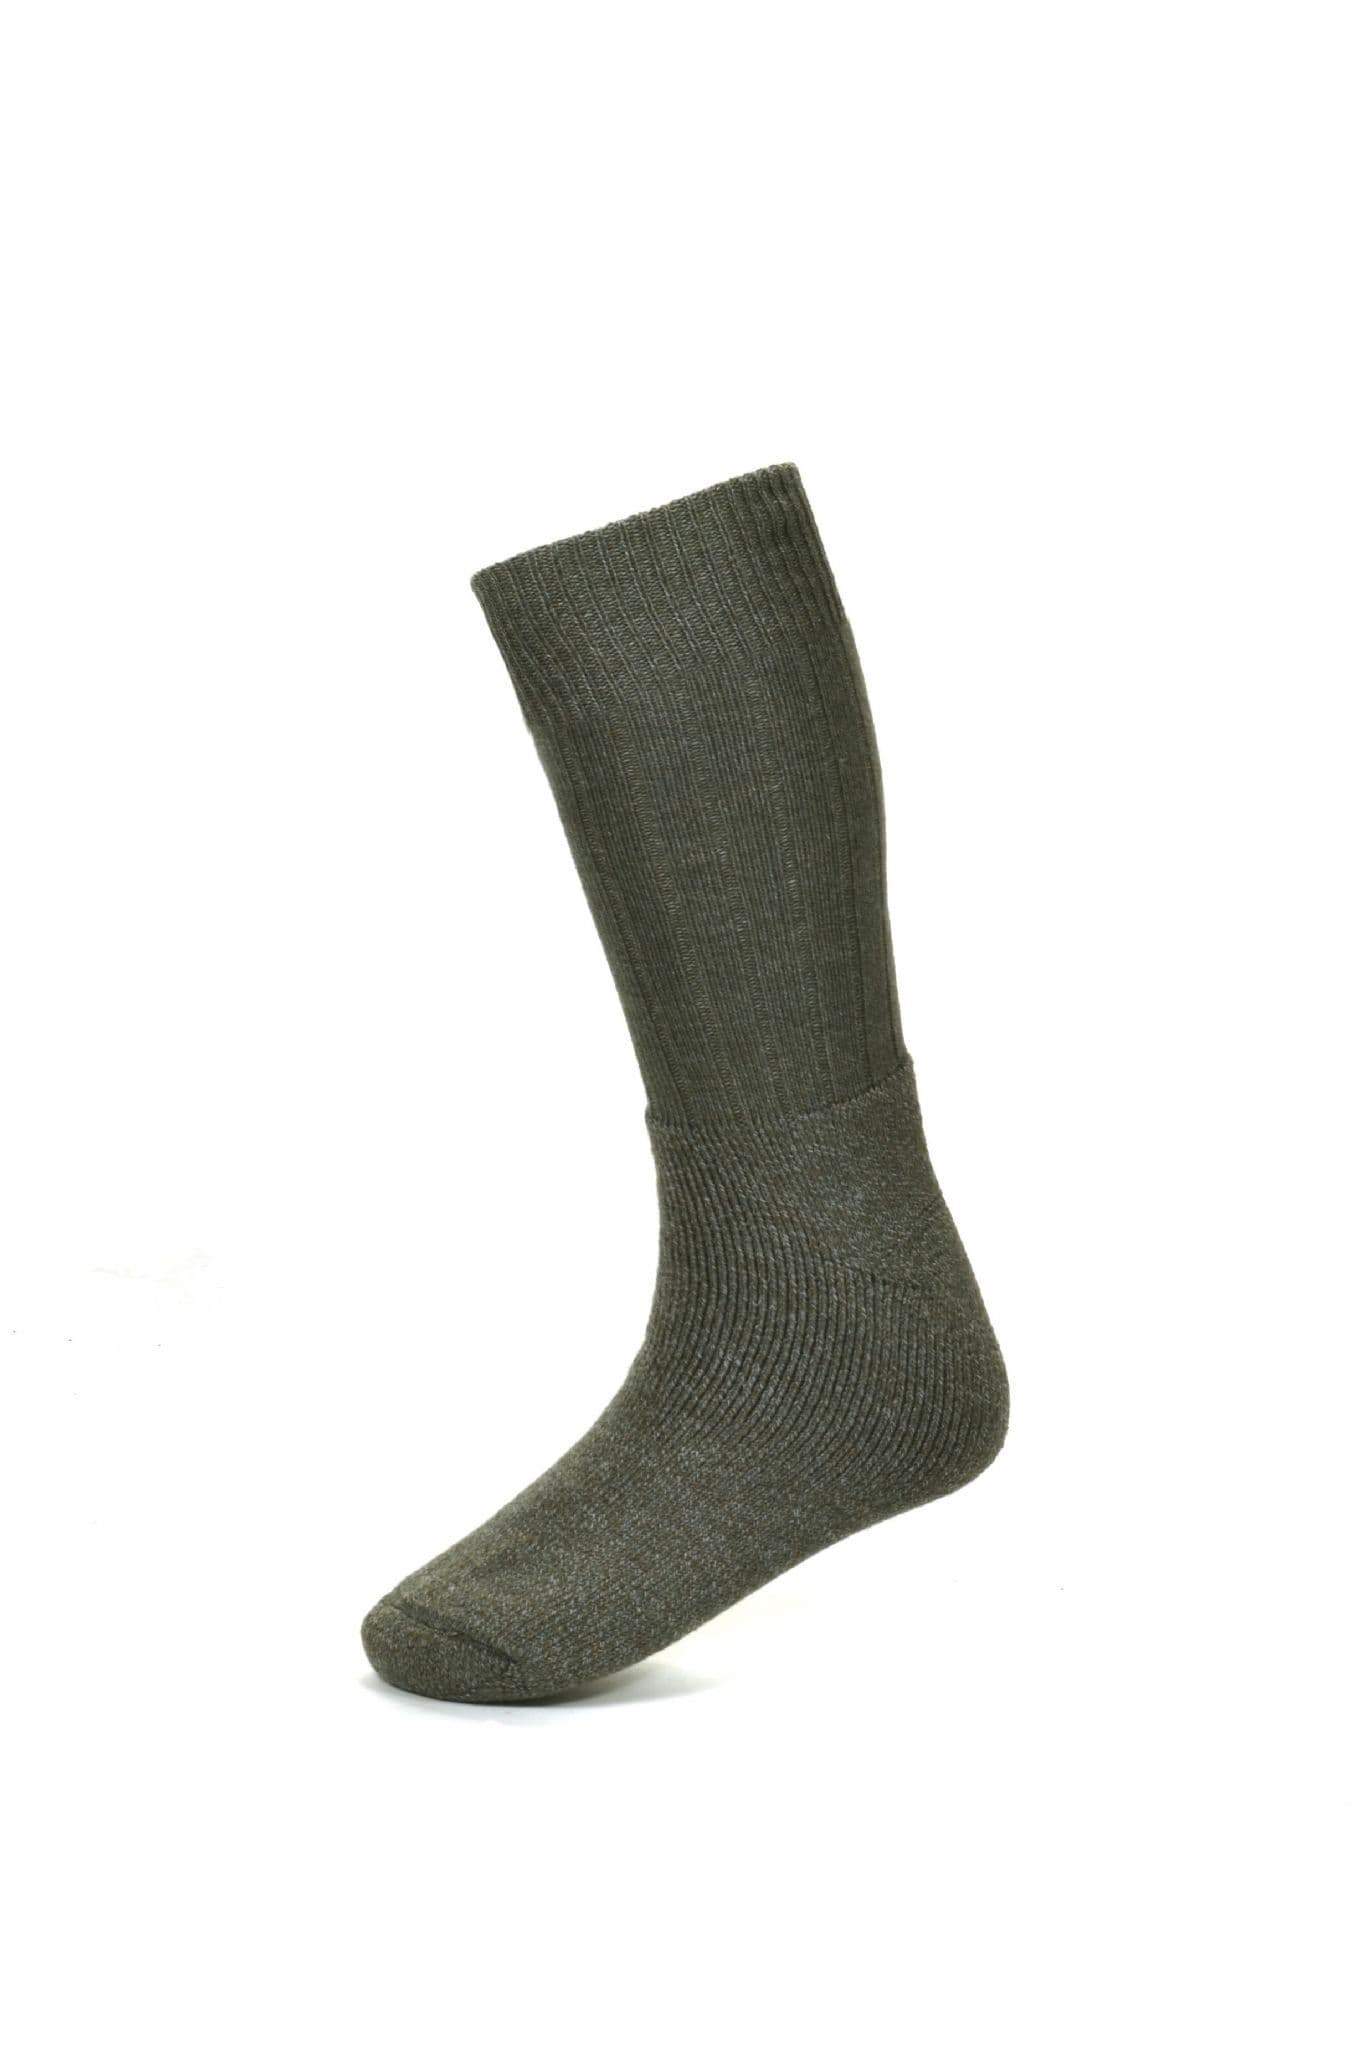 House Of Cheviot Men's Glenelg Short Boot Cushion Foot Socks - Derby